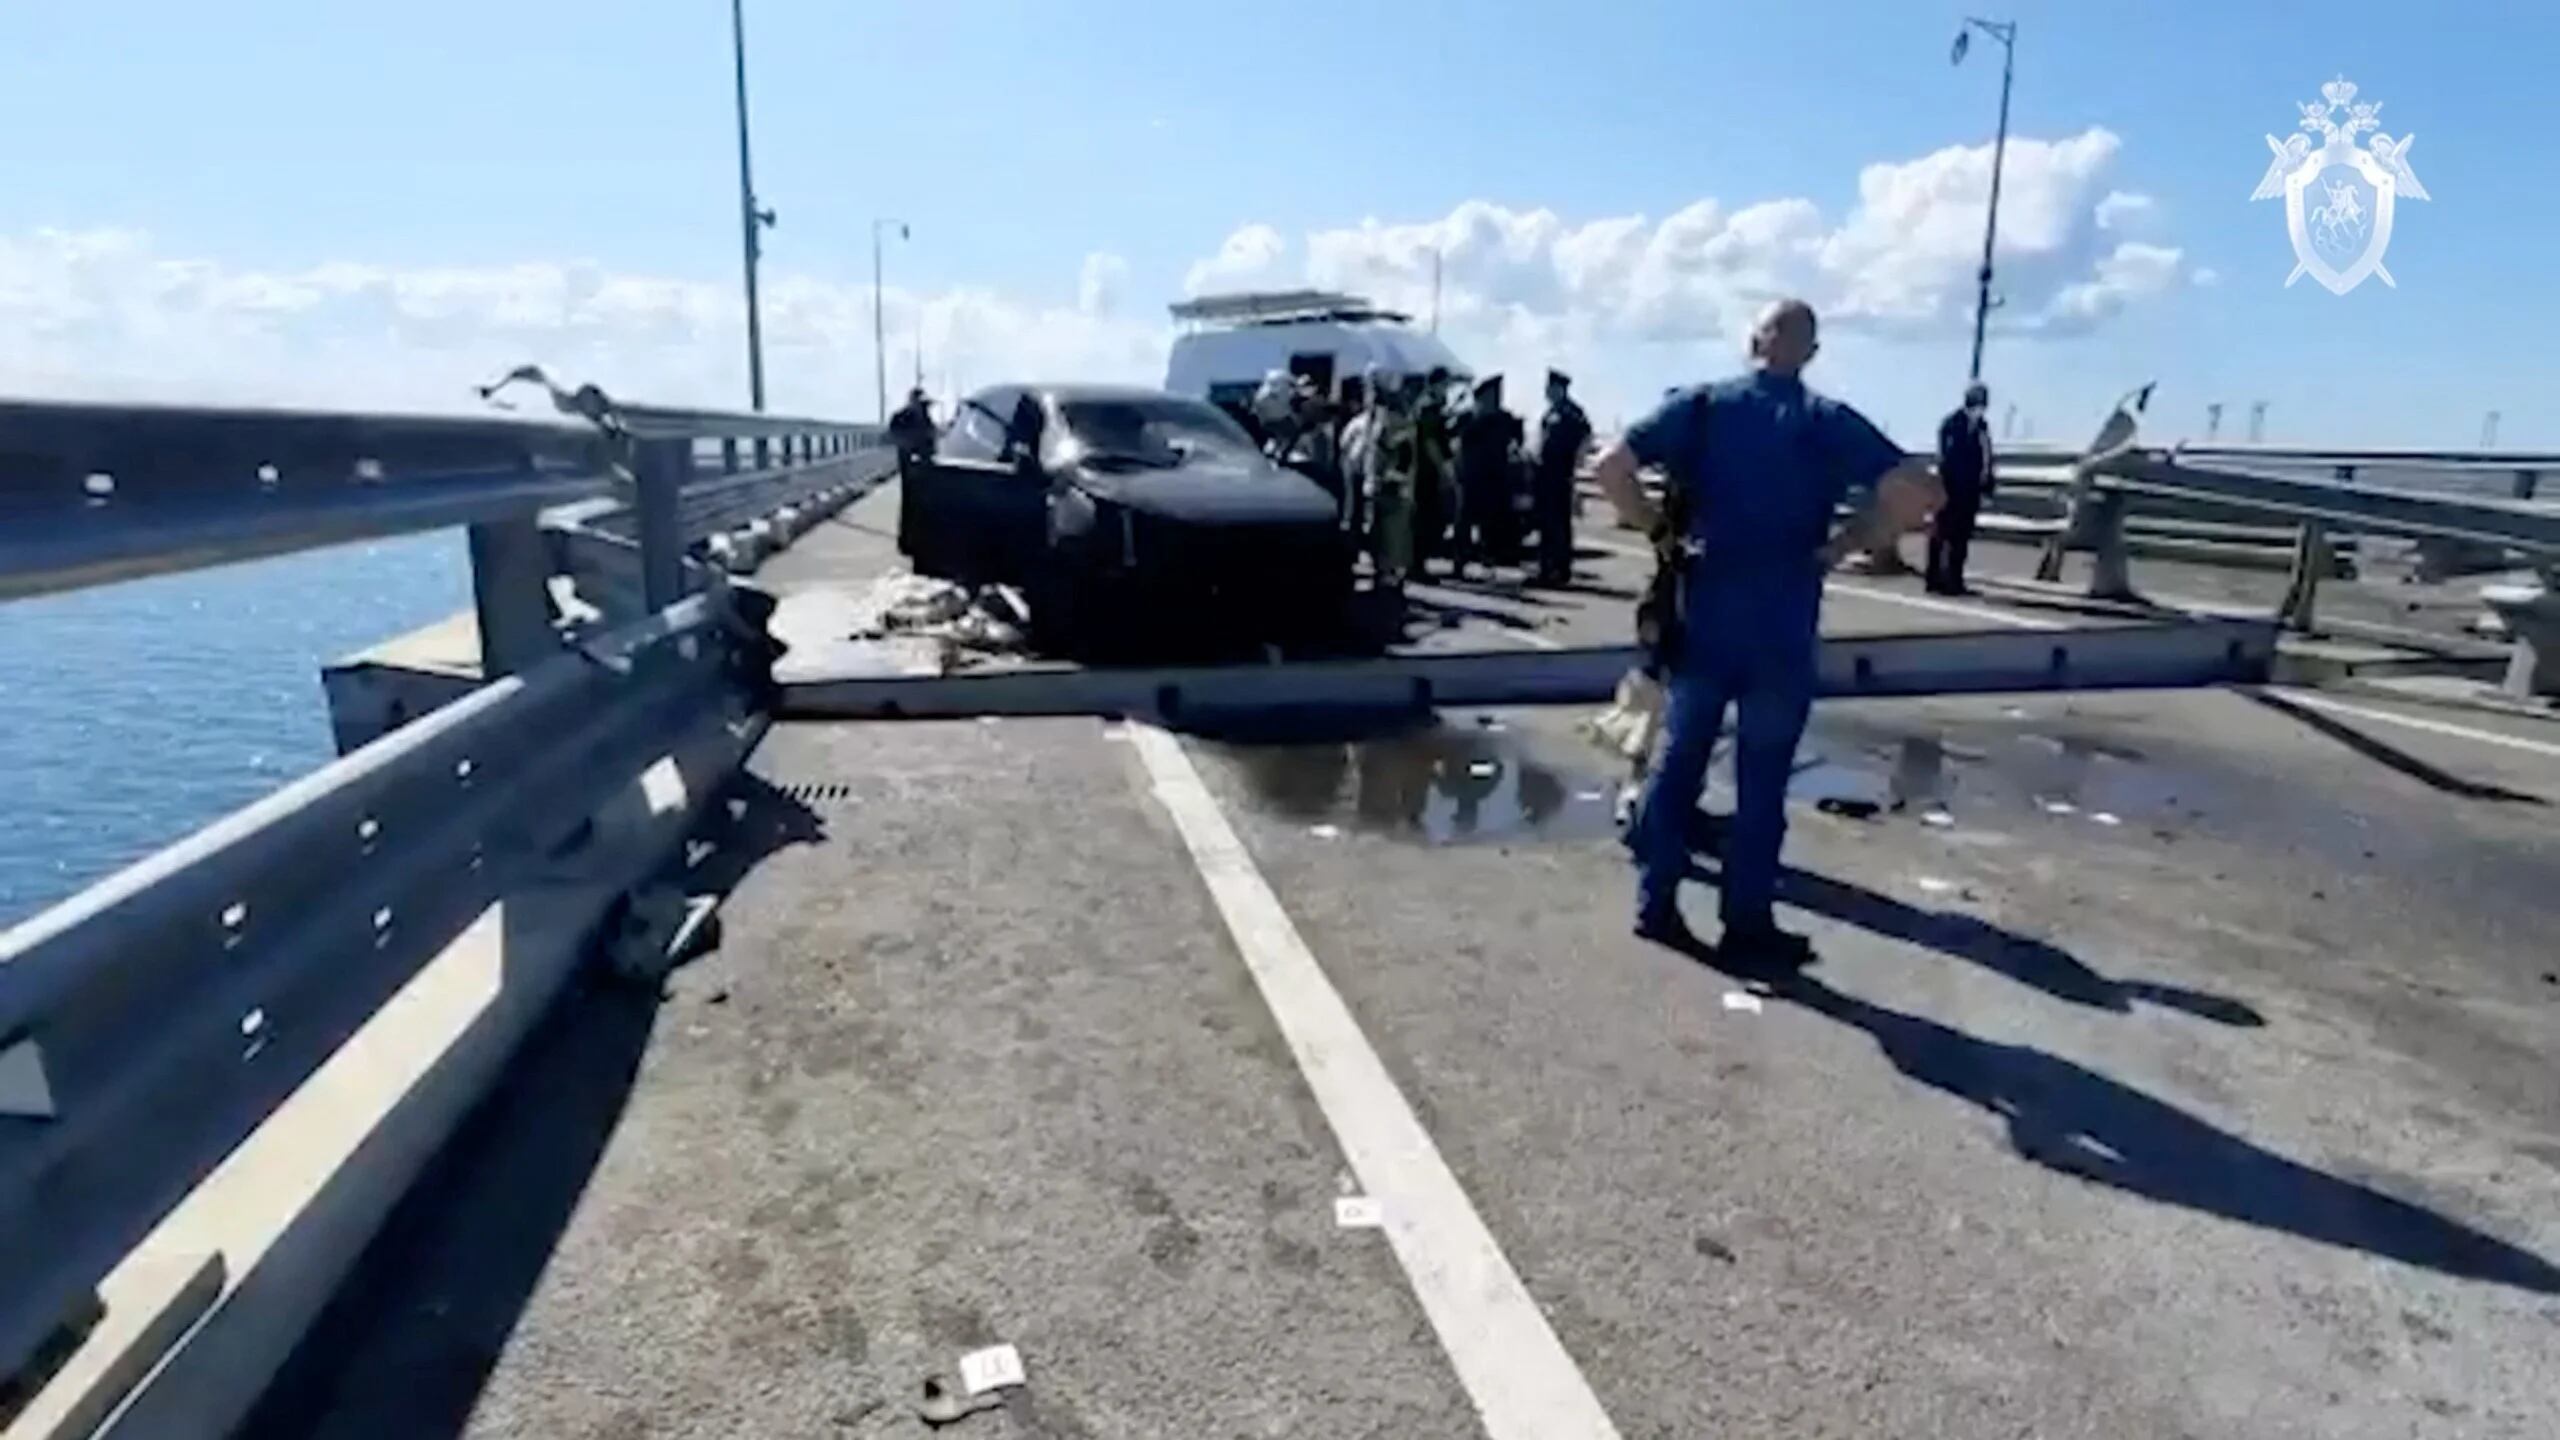 Investigadores y personal de emergencia junto a un auto destruido en el ataque (via Reuters)